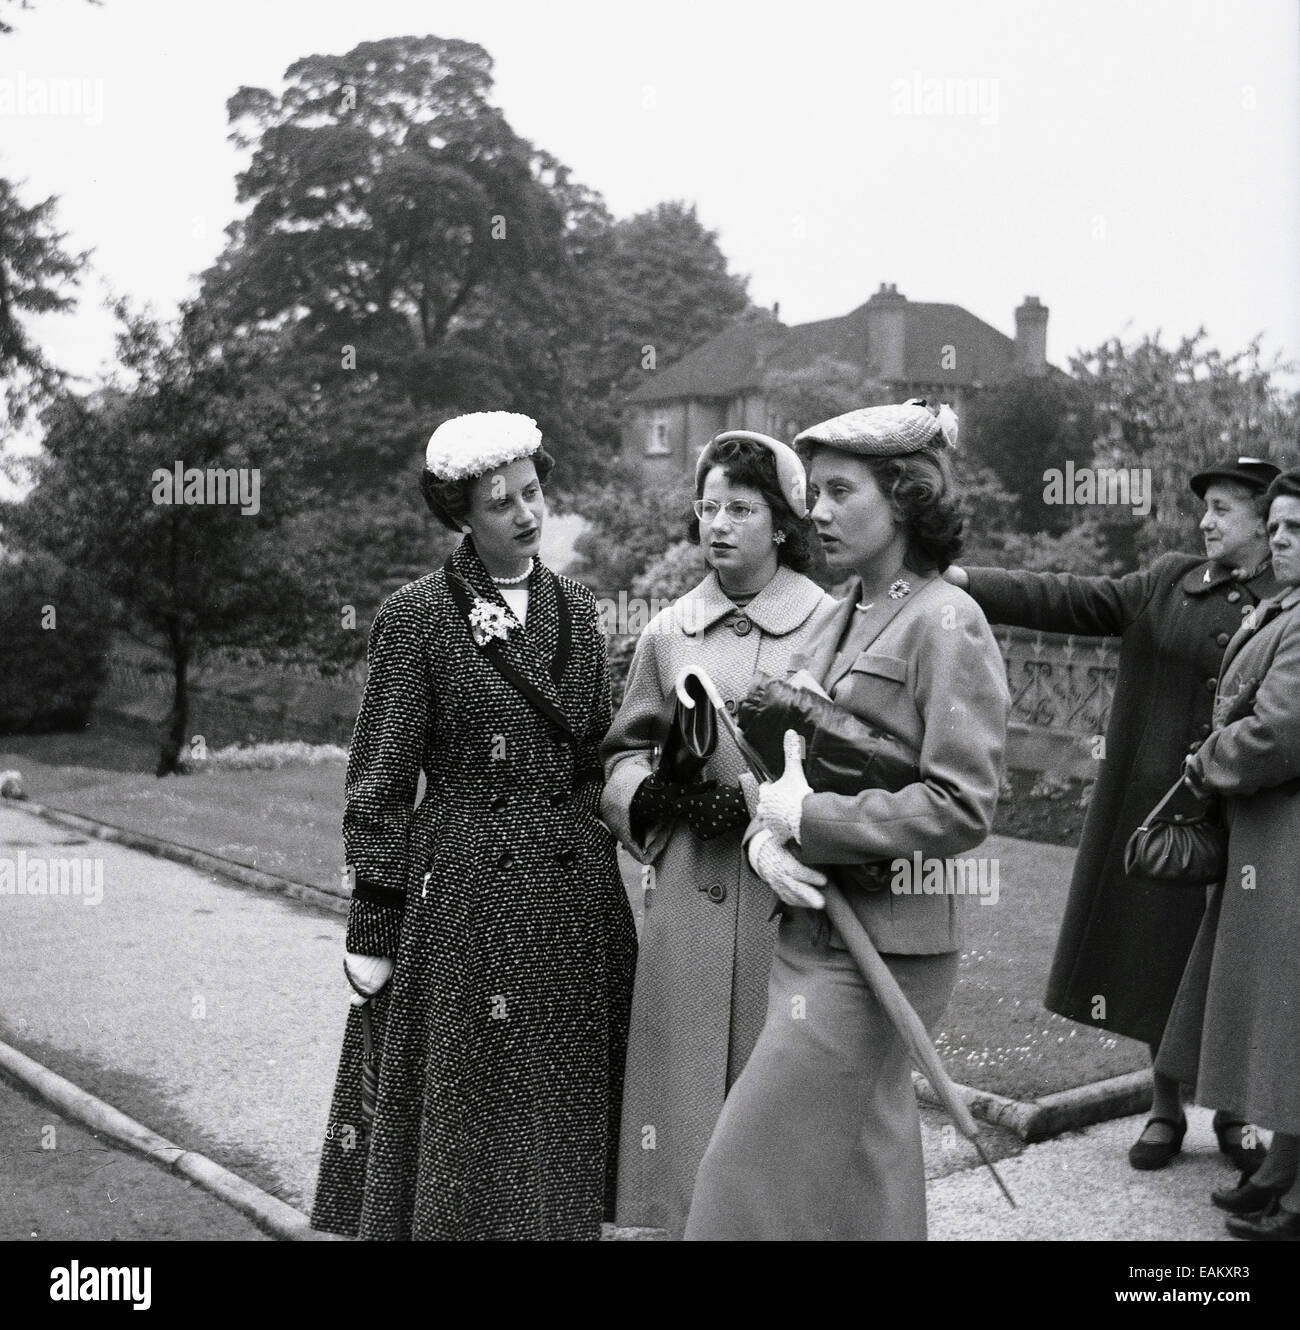 Années 1950, image historique montrant trois jolies jeunes femmes debout ensemble à l'extérieur, élégamment habillées à la mode du jour, avec des chapeaux, manteaux et sacs à main, Angleterre, Royaume-Uni. Banque D'Images